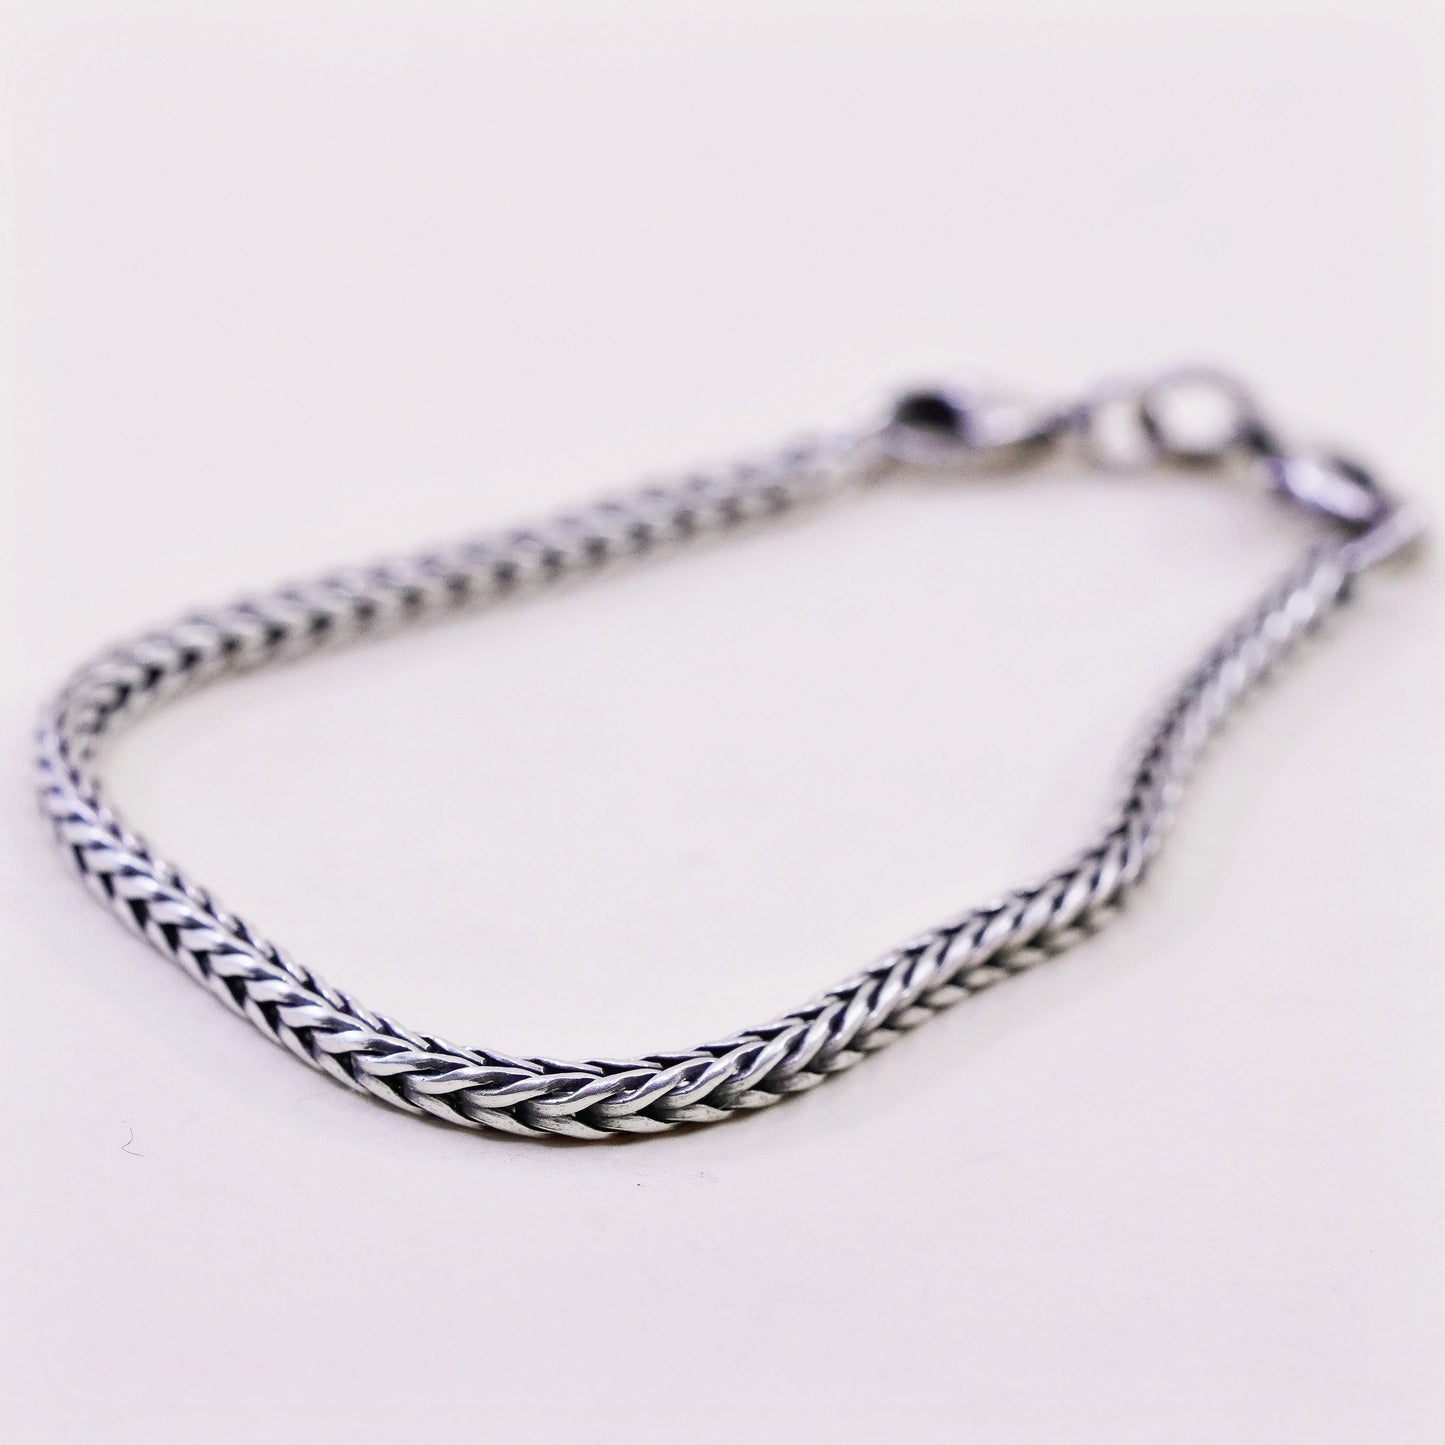 7”, trollbead LAA sterling silver handmade bracelet, bold 925 wheat chain